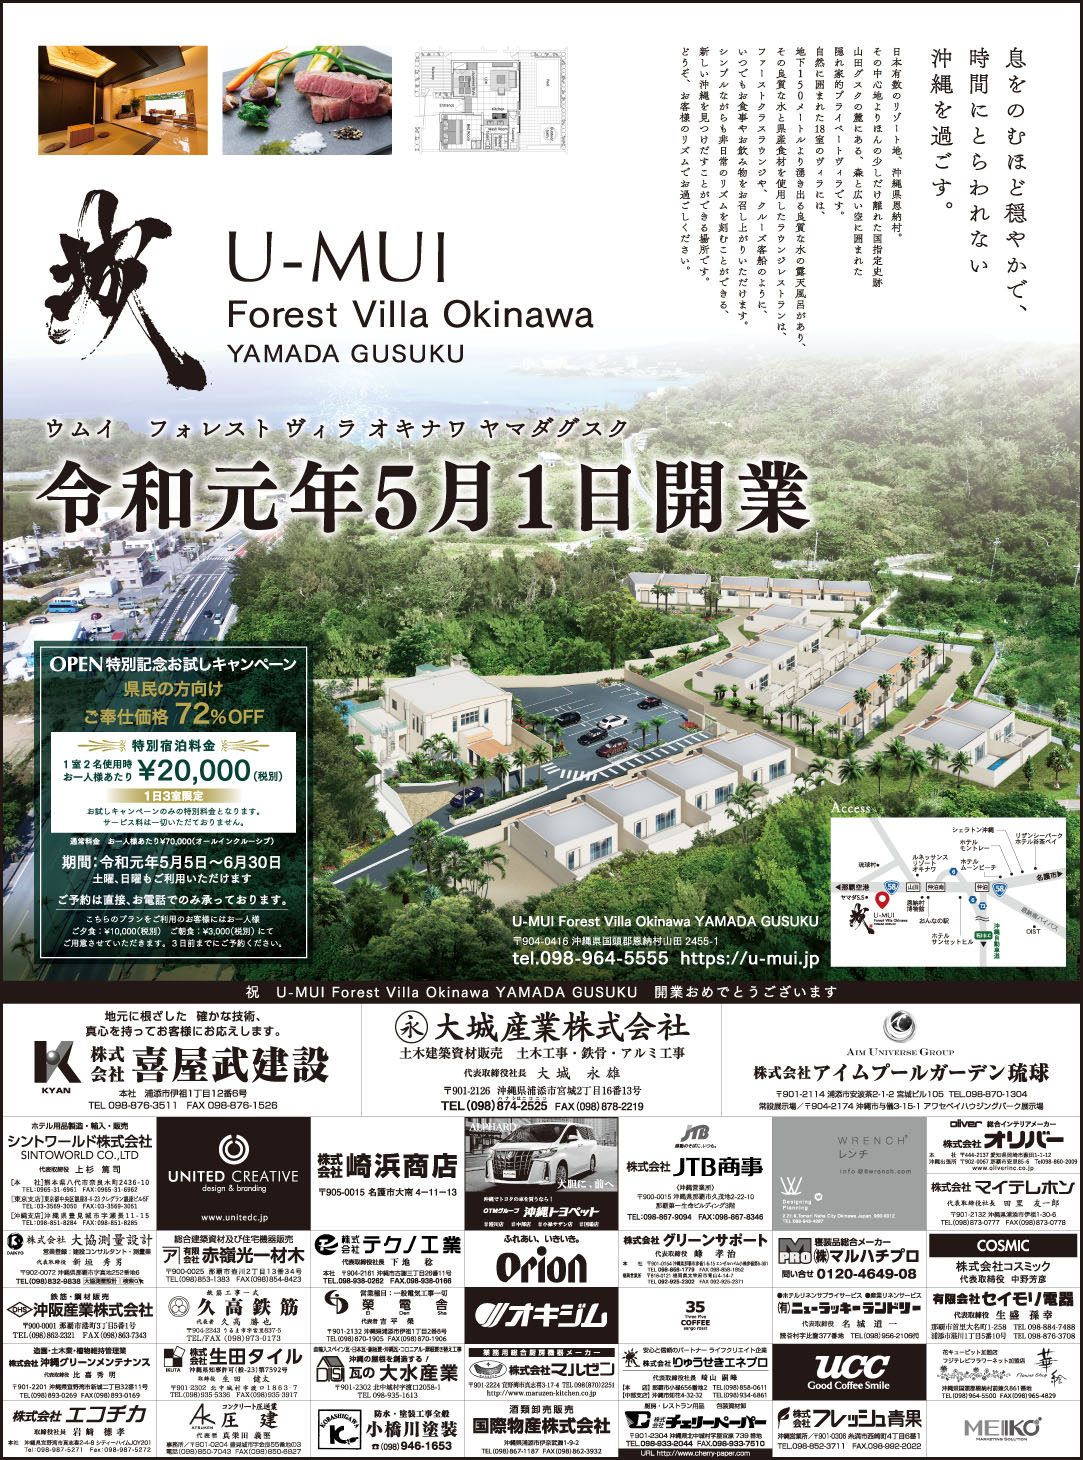 U-MUI-Forest-Villa-Okinawa-YAMADA-GUSUKU-15段